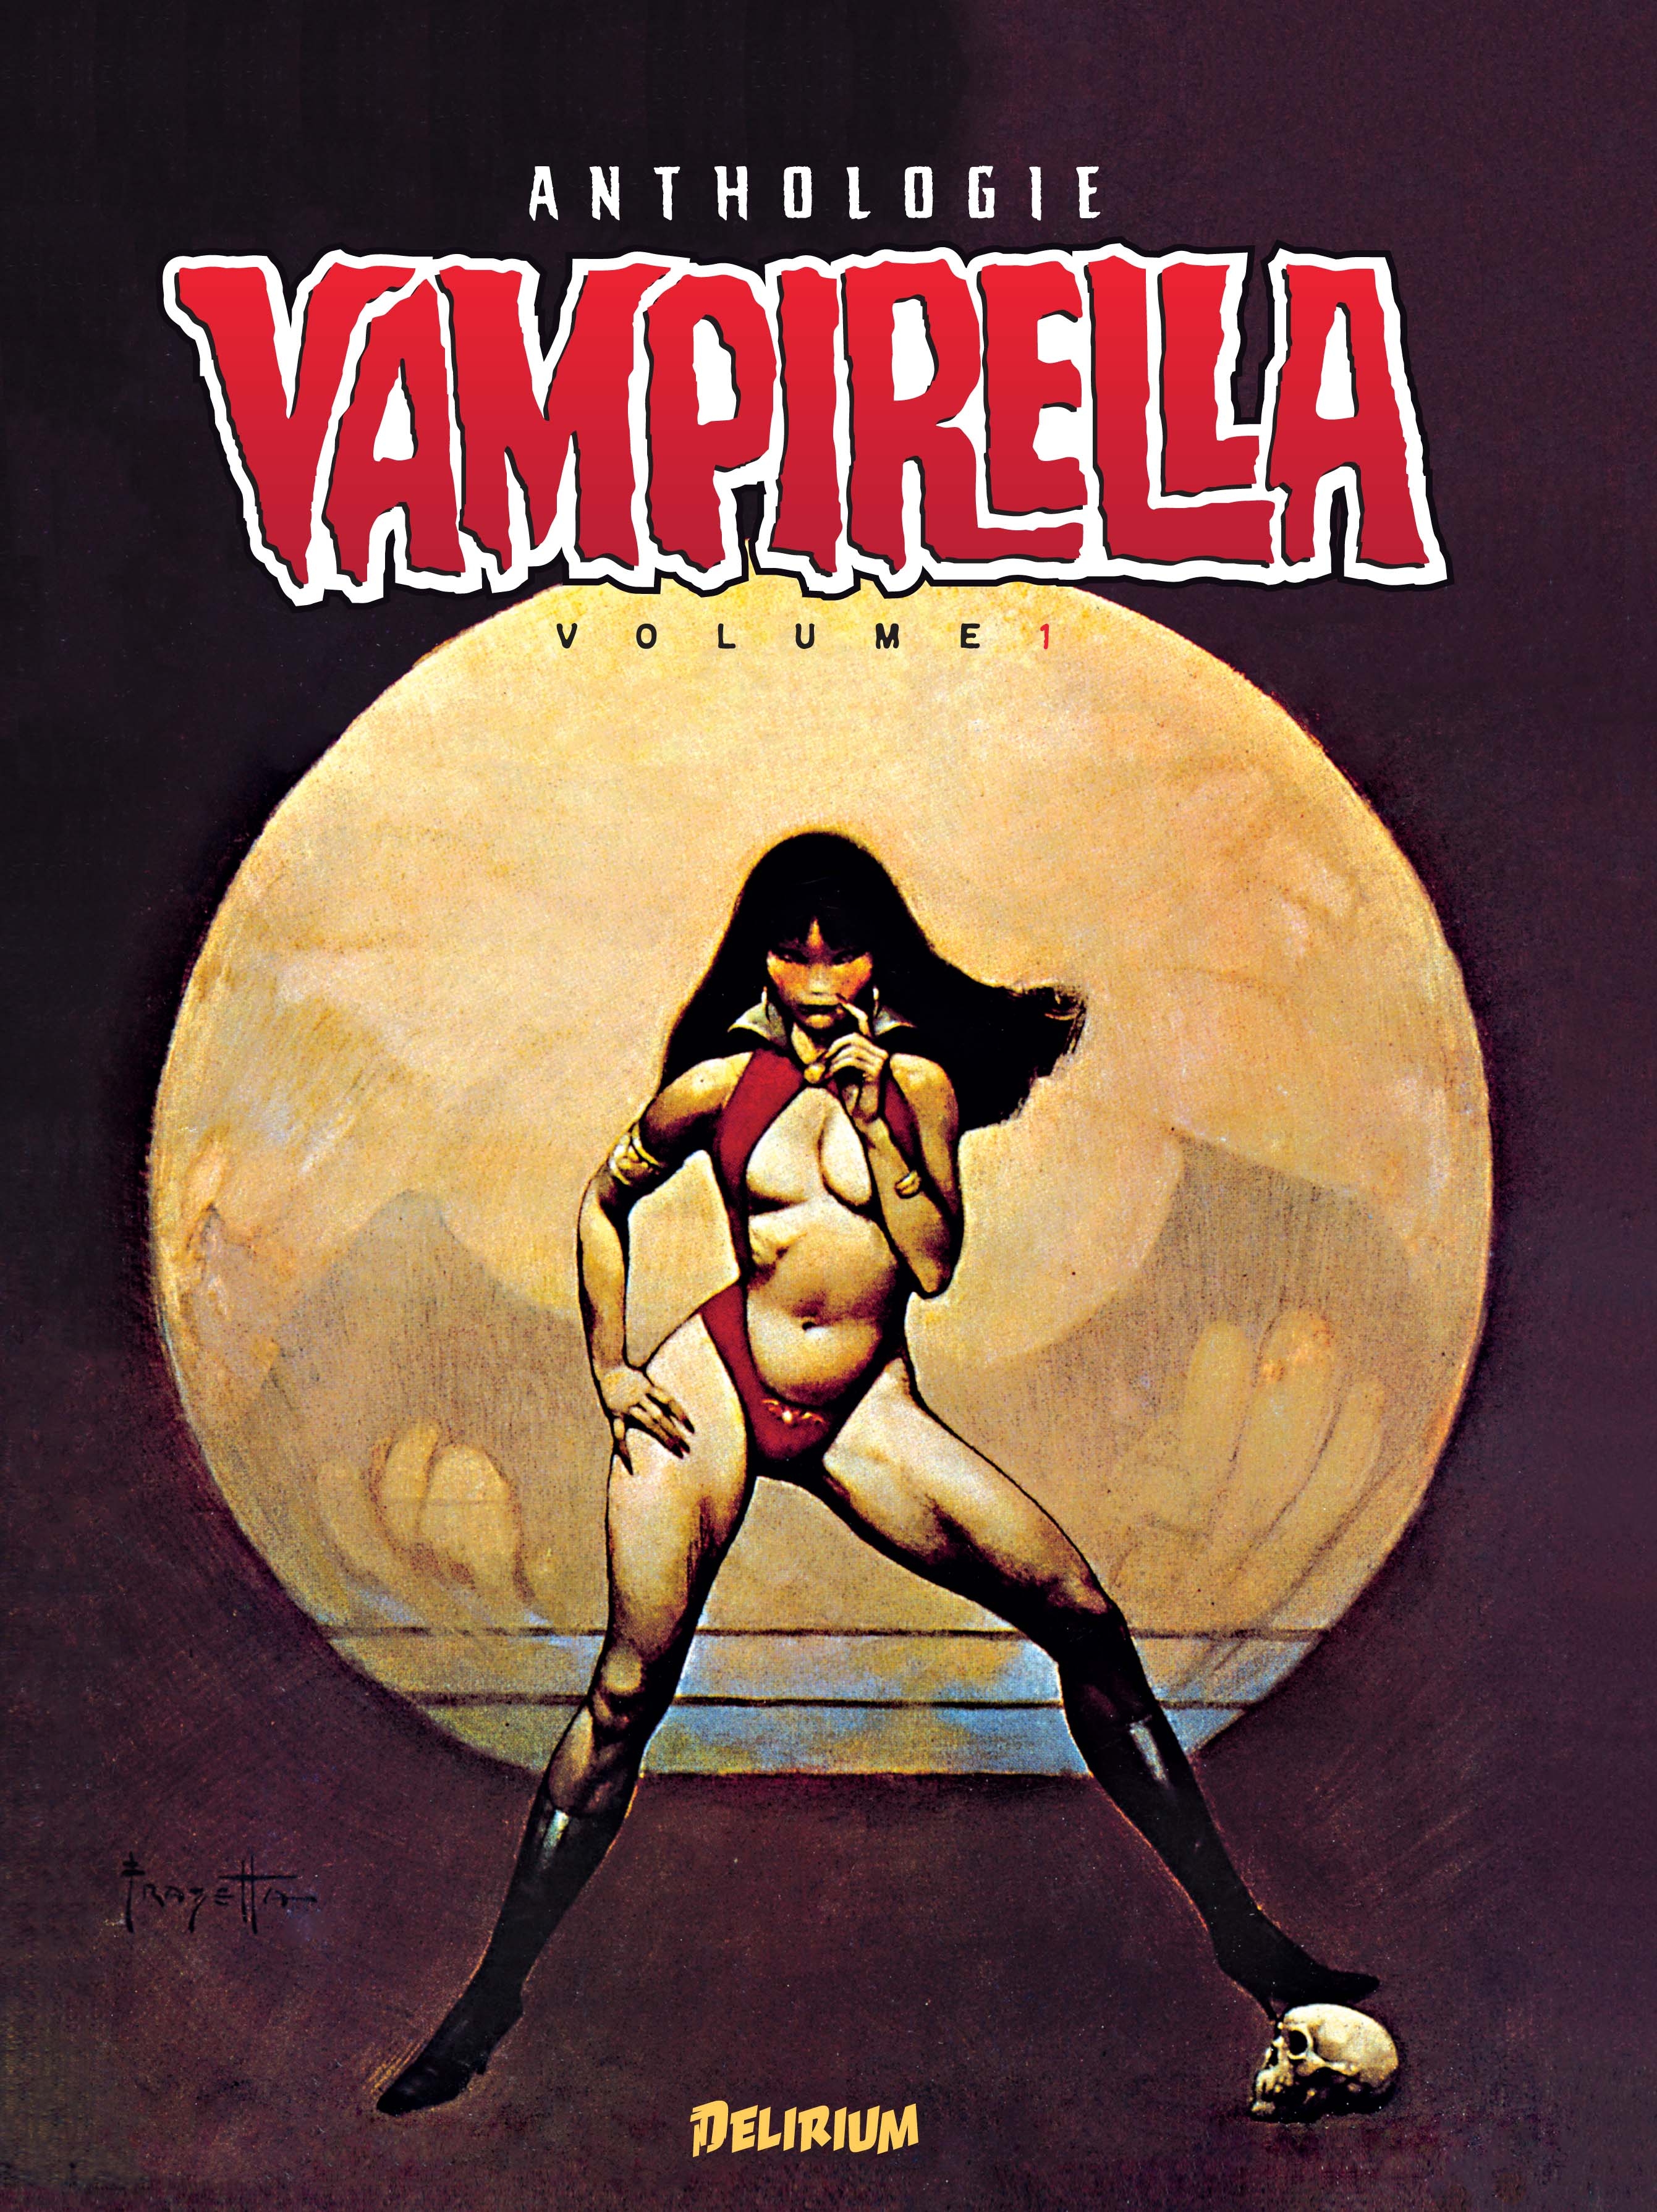 Vampirella Anthologie Volume 1 (VF)